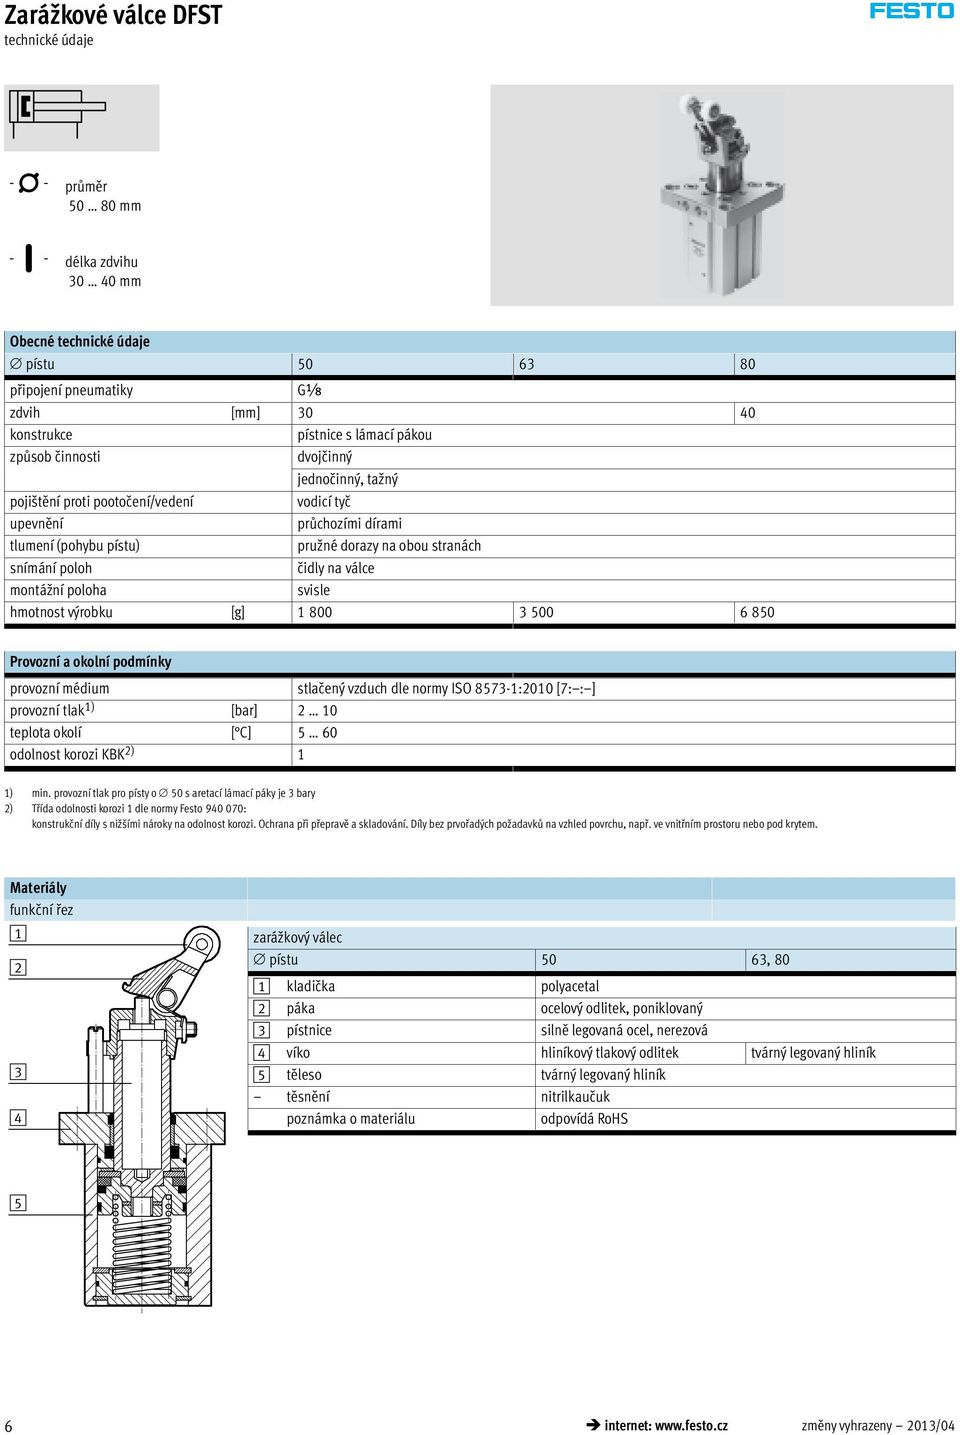 6 850 Provozní a okolní podmínky provozní médium stlačený vzduch dle normy ISO 8573-1:2010 [7: : ] provozní tlak 1) [bar] 2 10 teplota okolí [ C] 5 60 odolnost korozi KBK 2) 1 1) min.